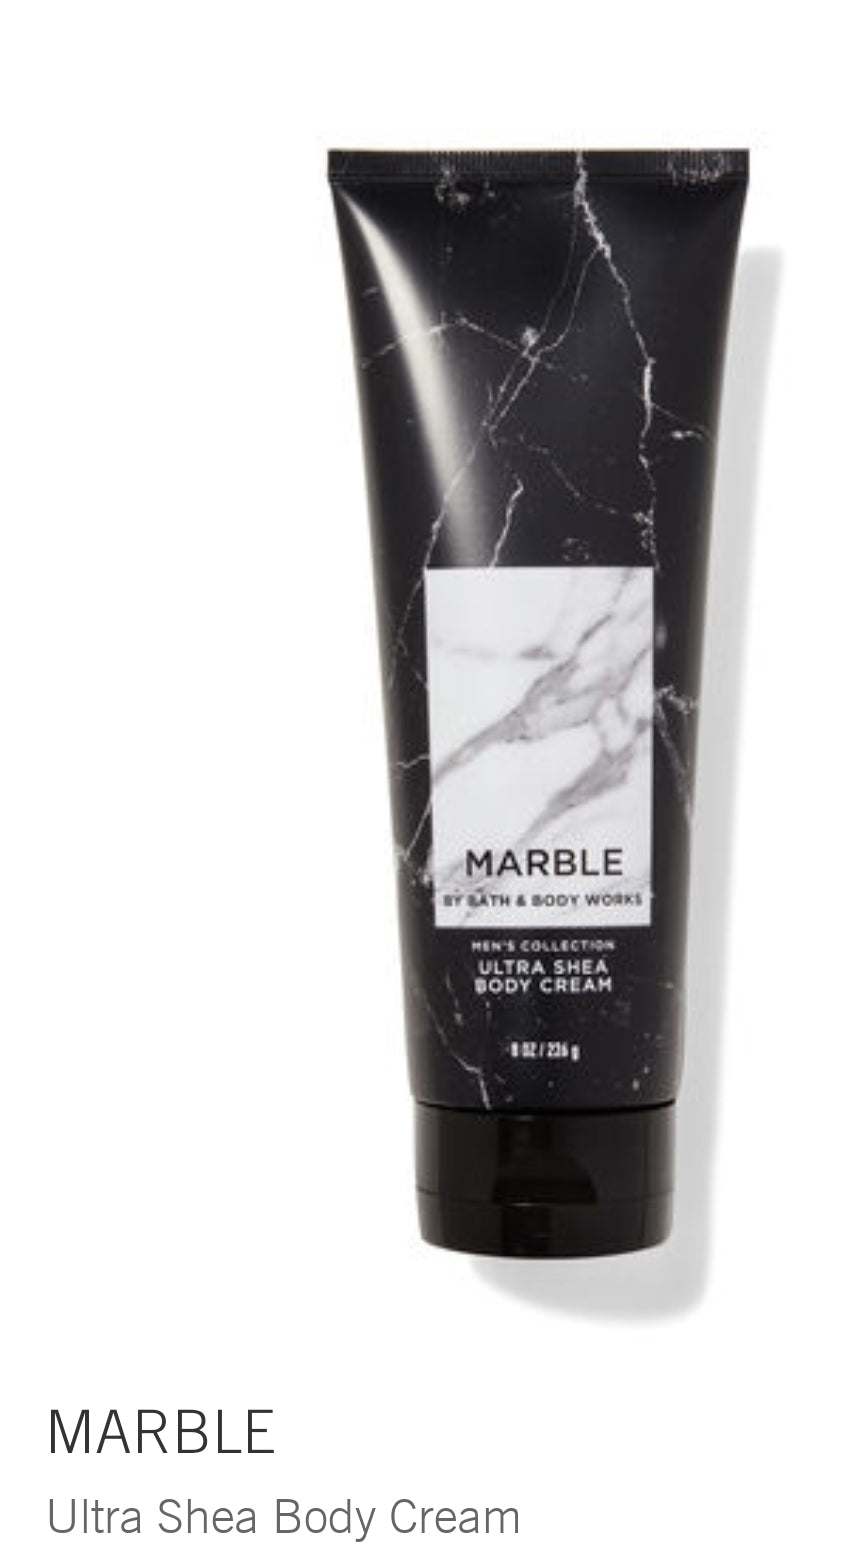 Marble body cream